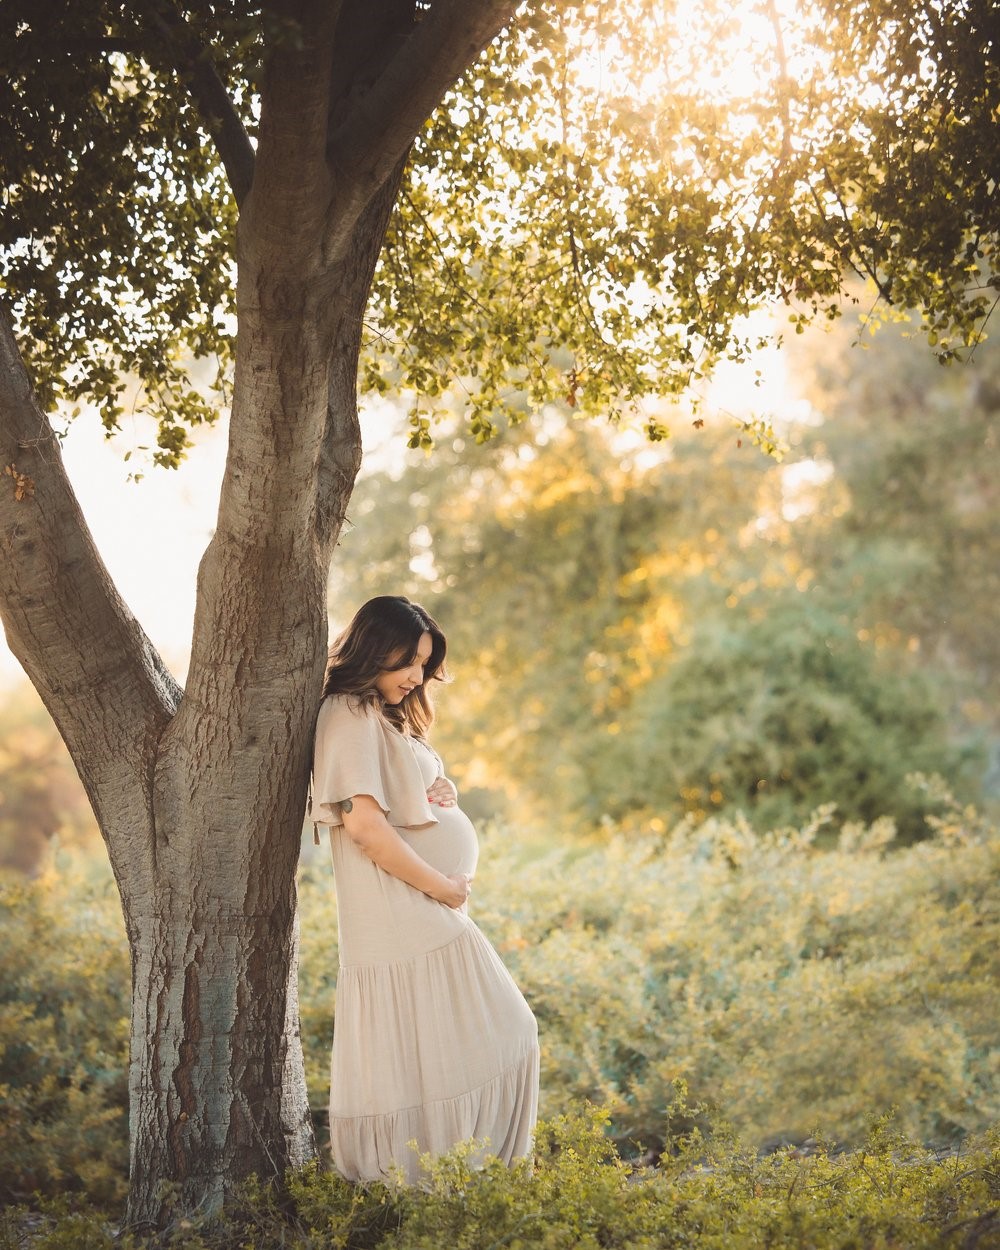 ایده عکاسی بارداری برای آتلیه عکاسی
